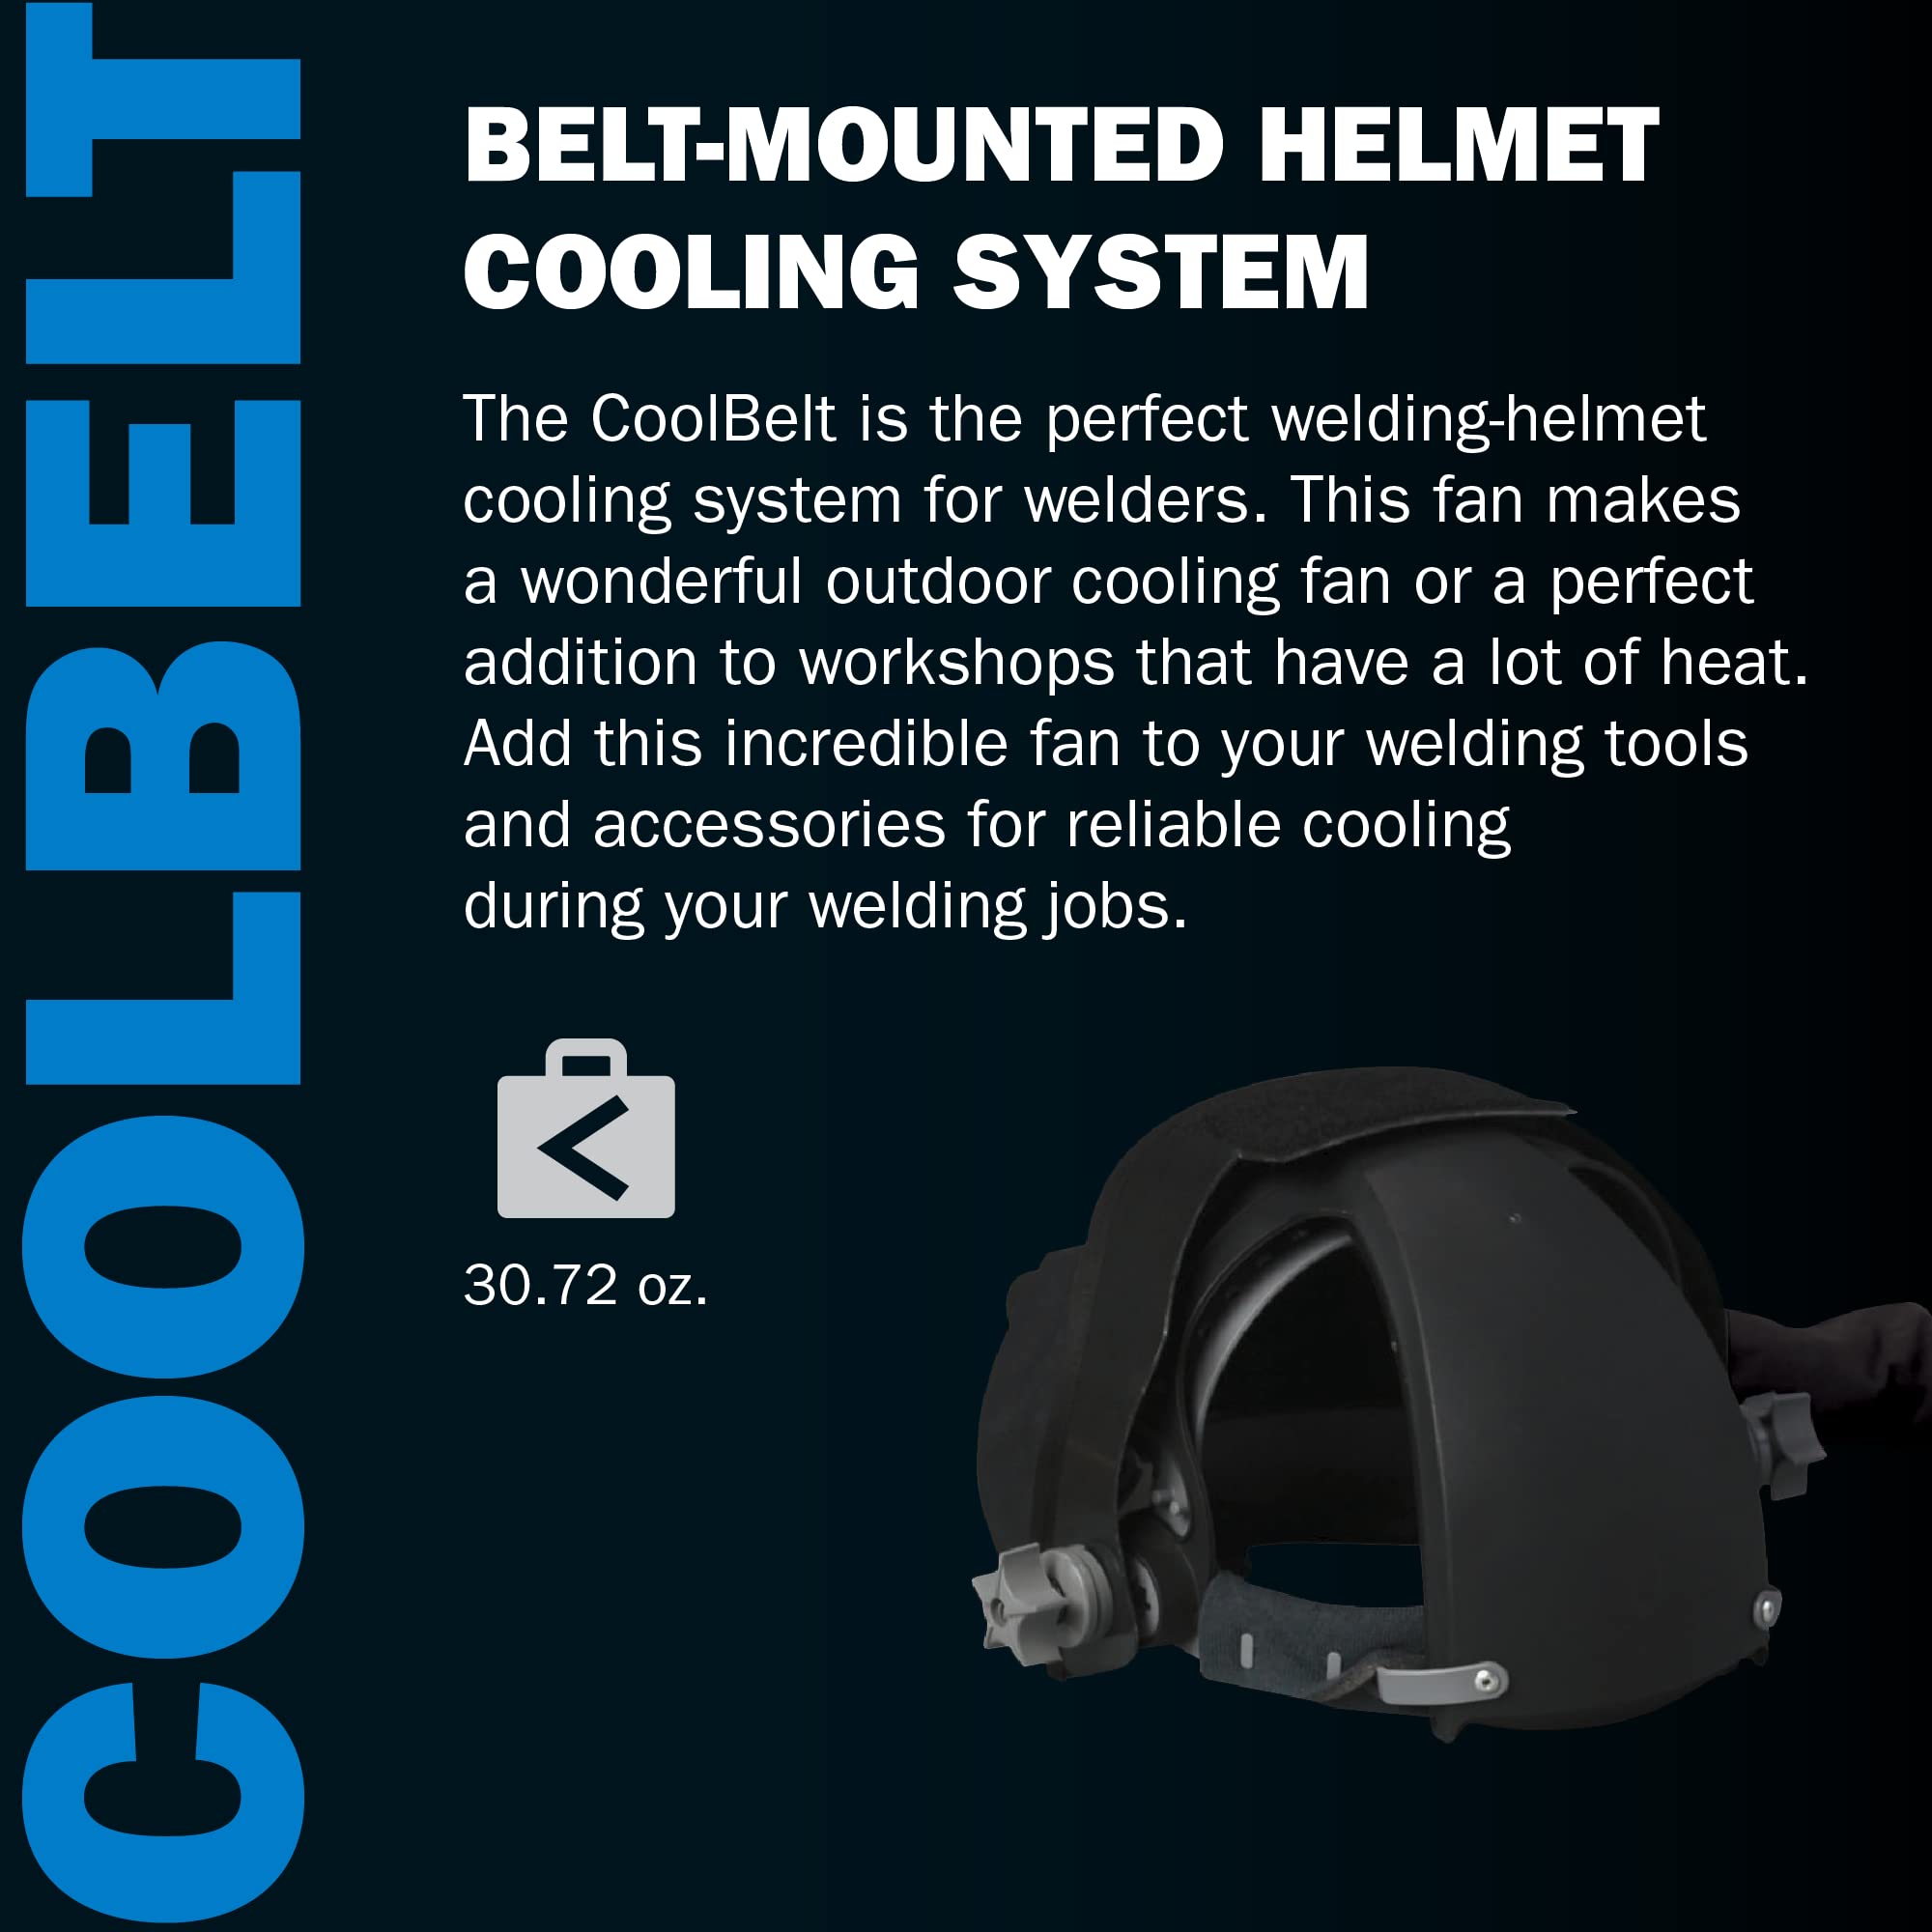 Miller 245230 CoolBelt Welding-Helmet Cooling System, Black